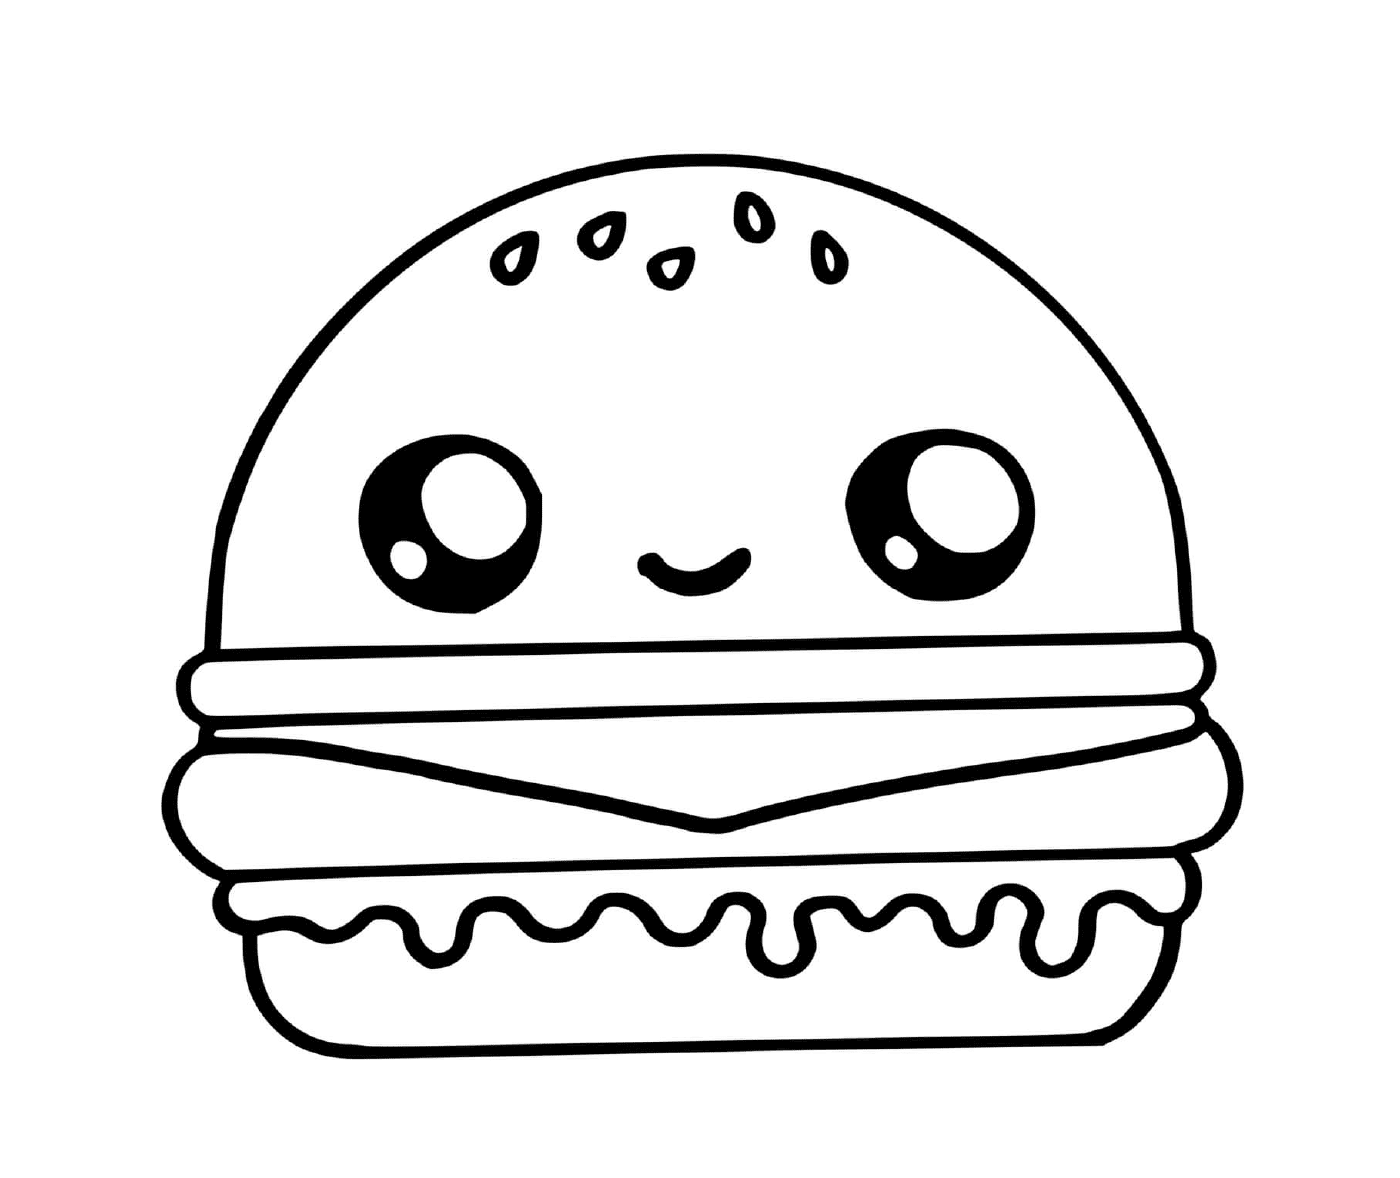  A cute hamburger 